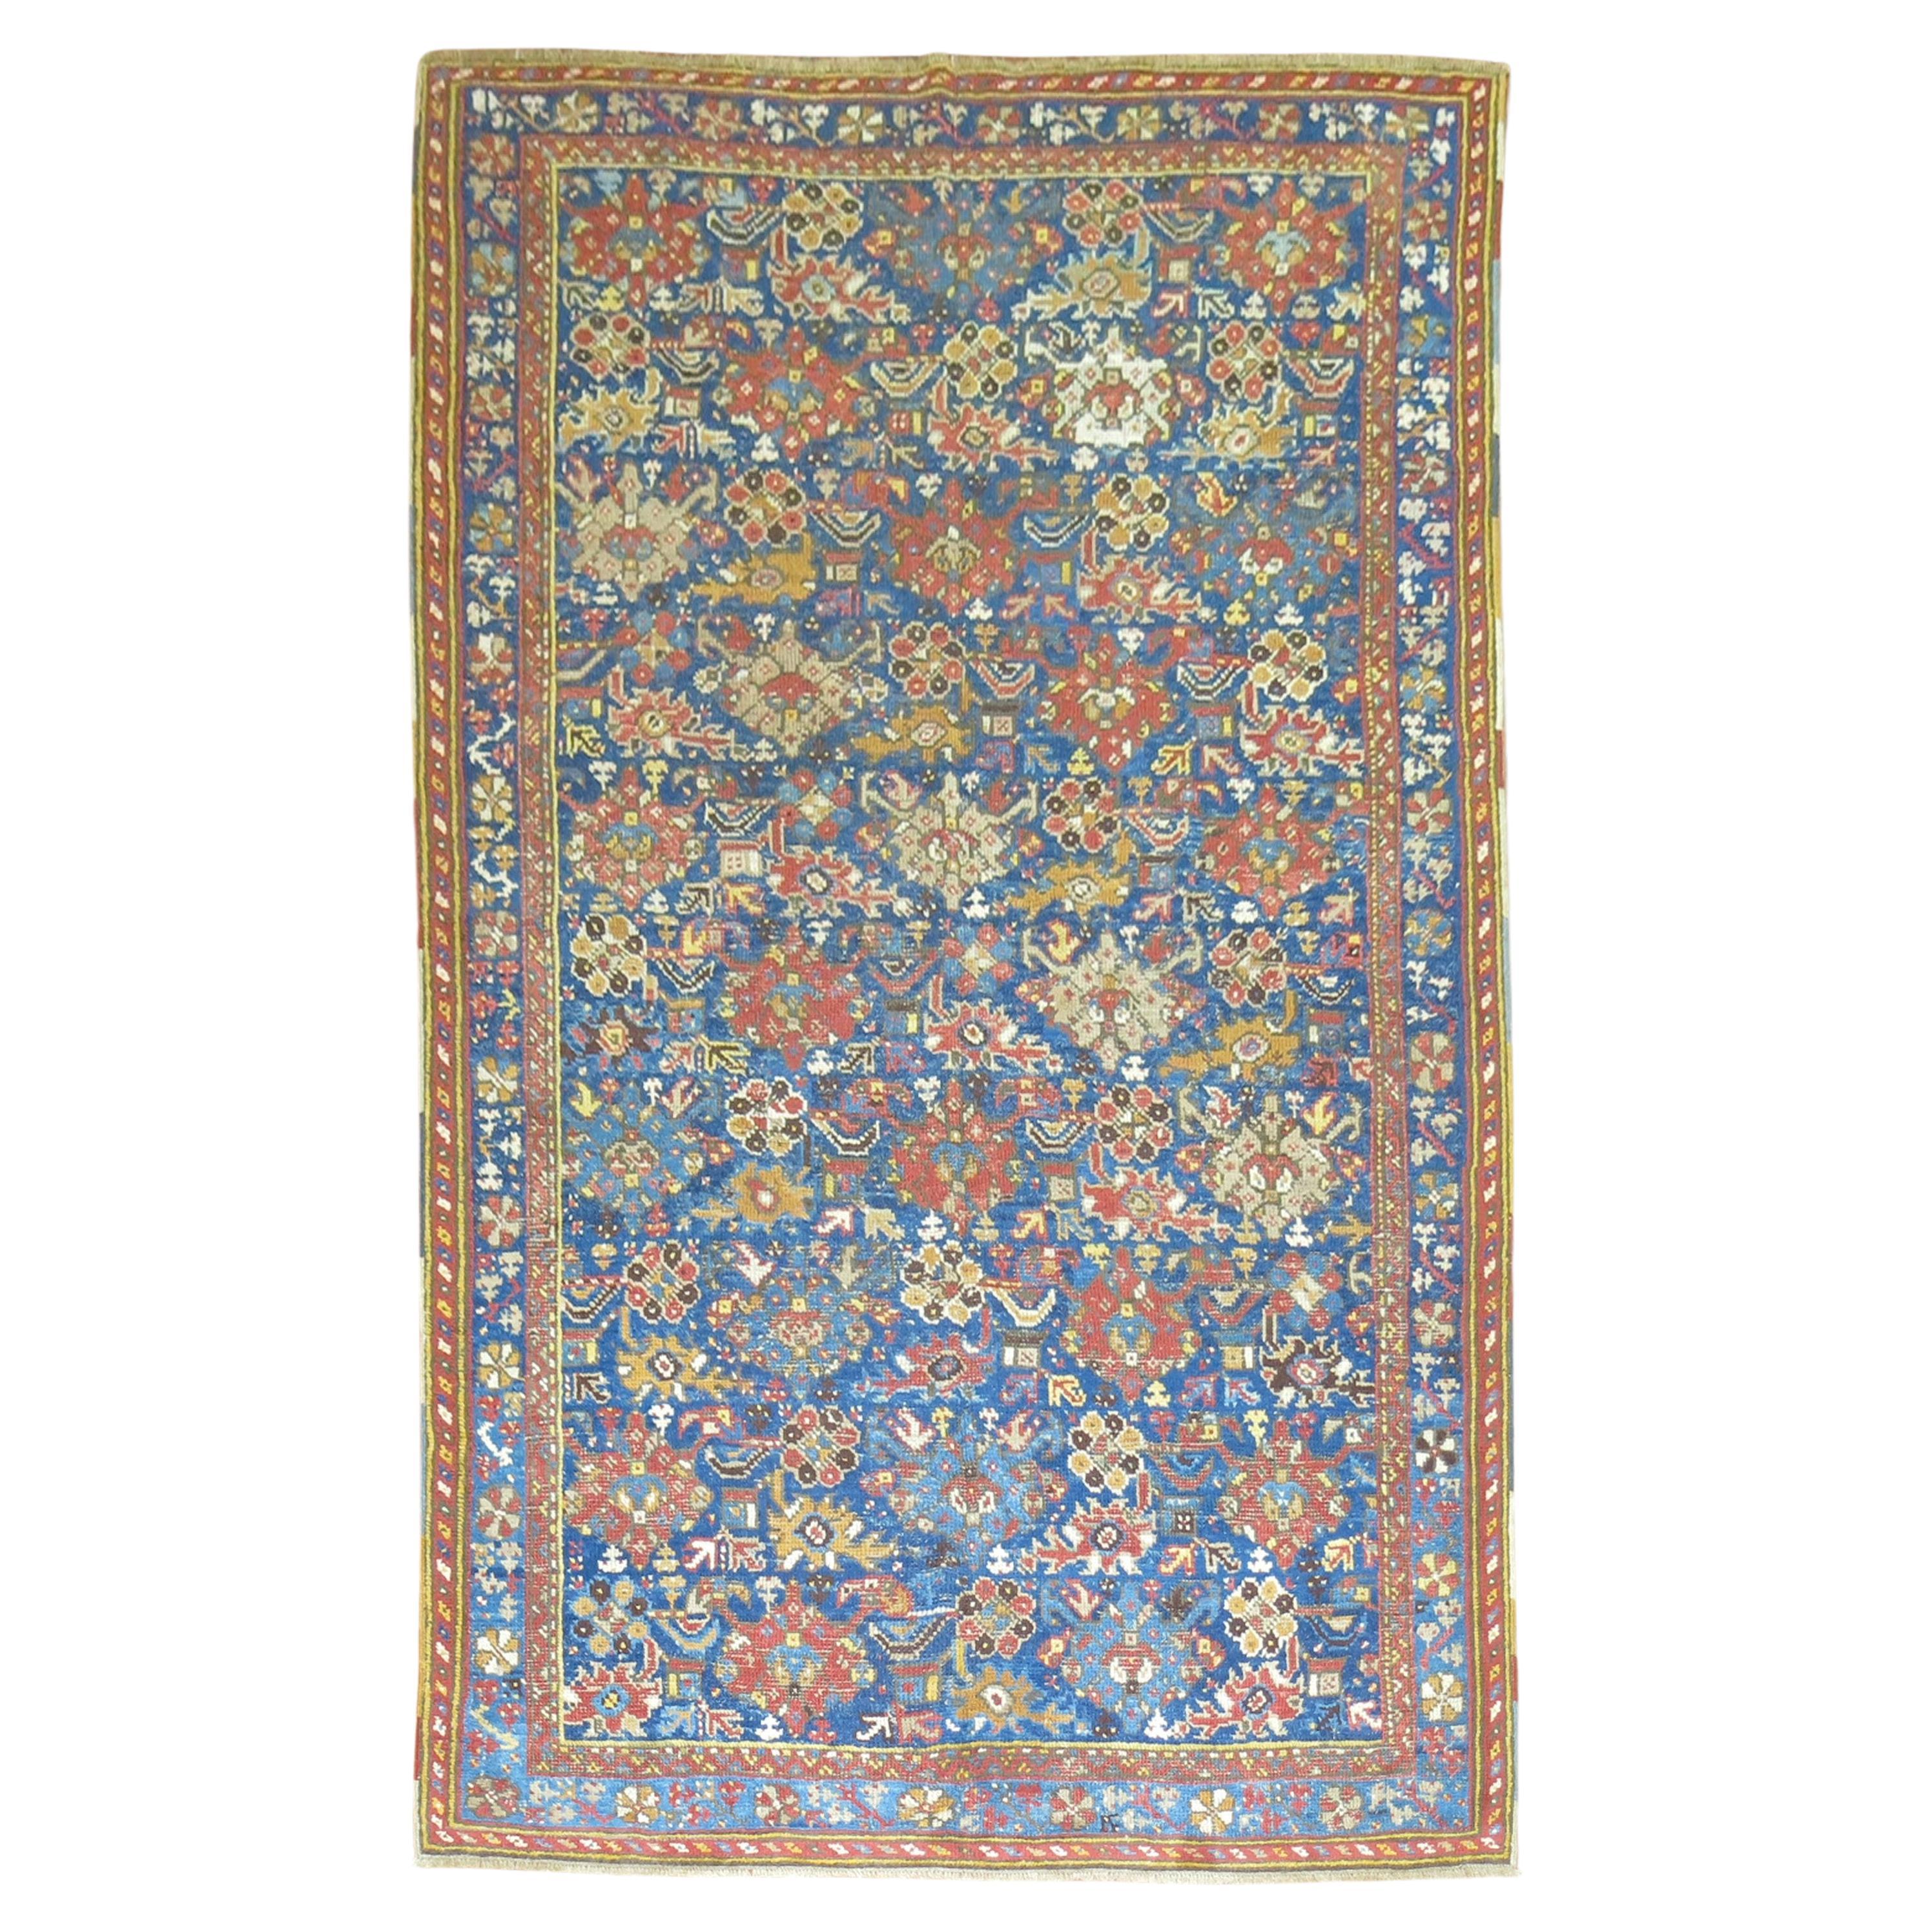 Tapis d'Oushak bleu ancien de la collection Zabihi du 19ème siècle